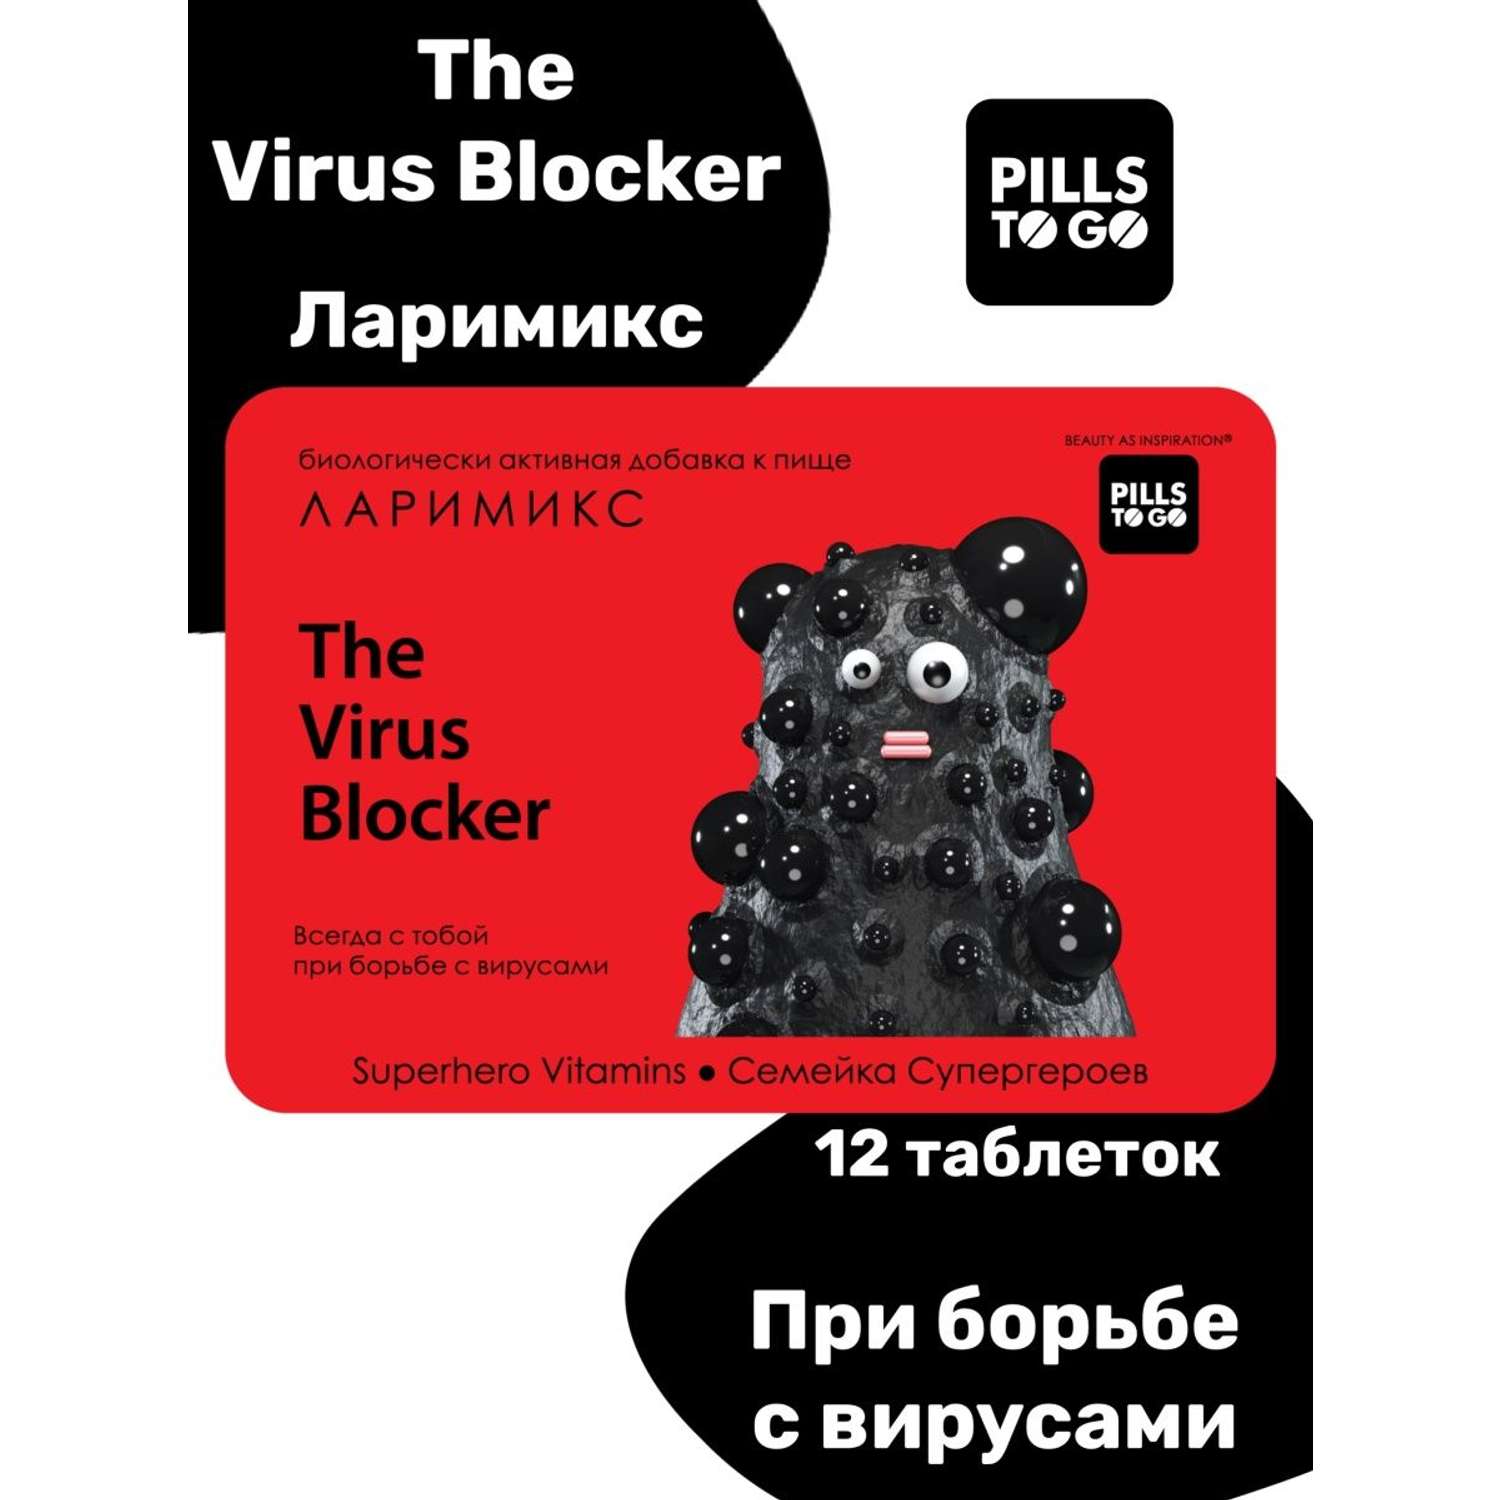 Комплекс PILLS TO GO для защиты от вирусов The Virus Blocker Ларимикс 12 таблеток - фото 1